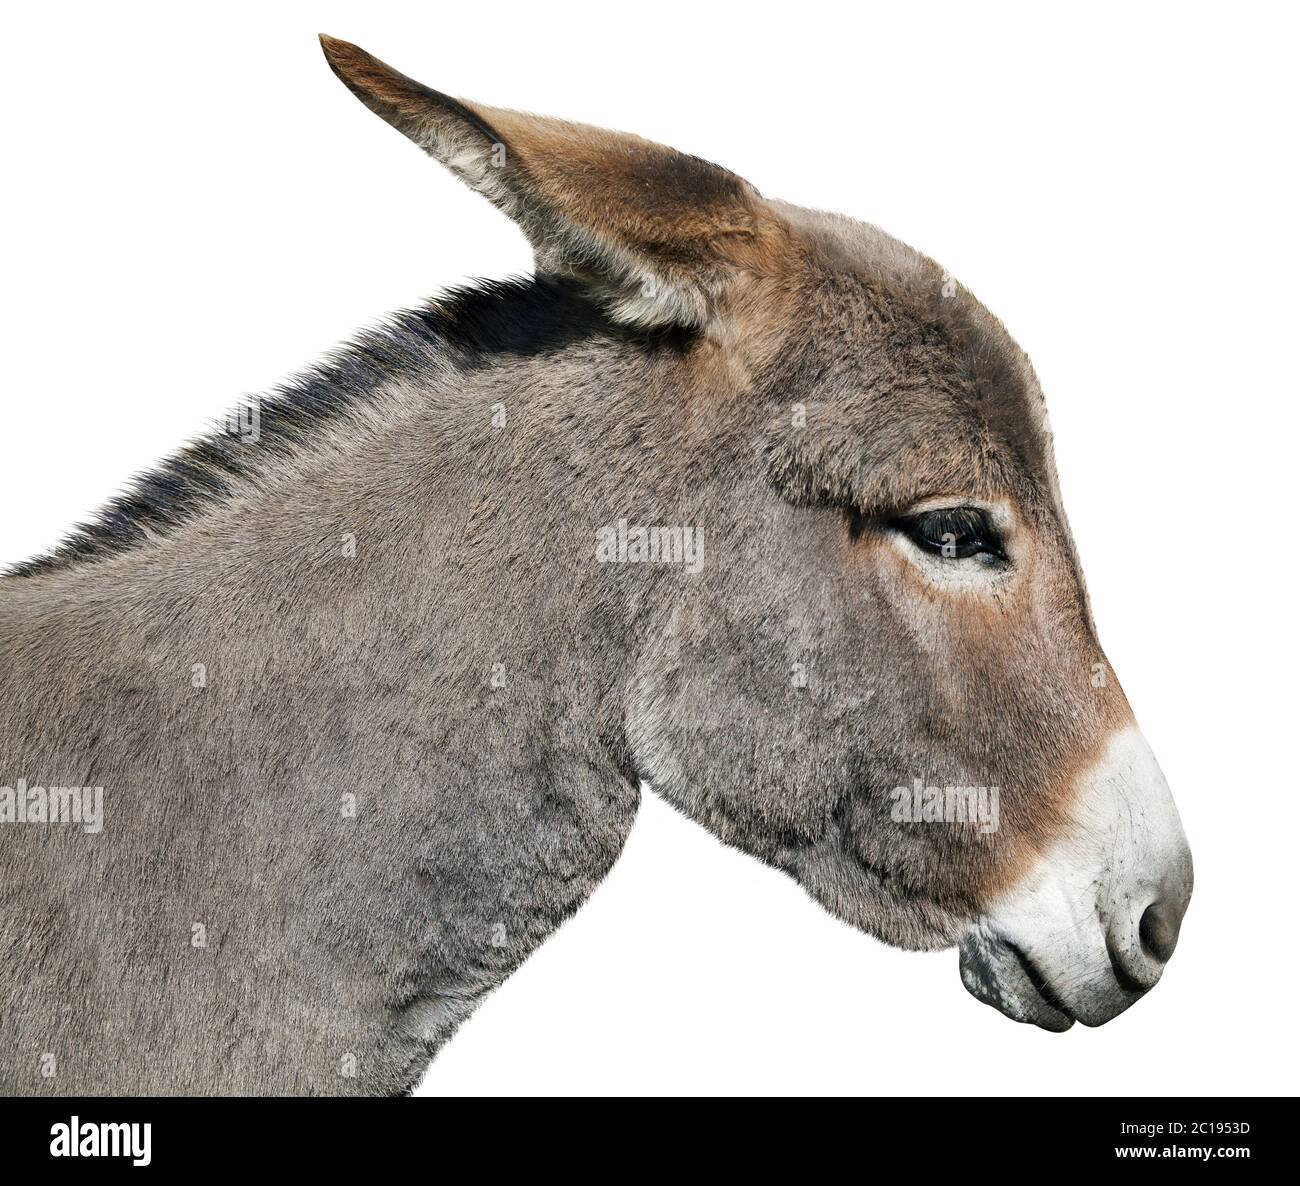 Donkey isolated on white background Stock Photo